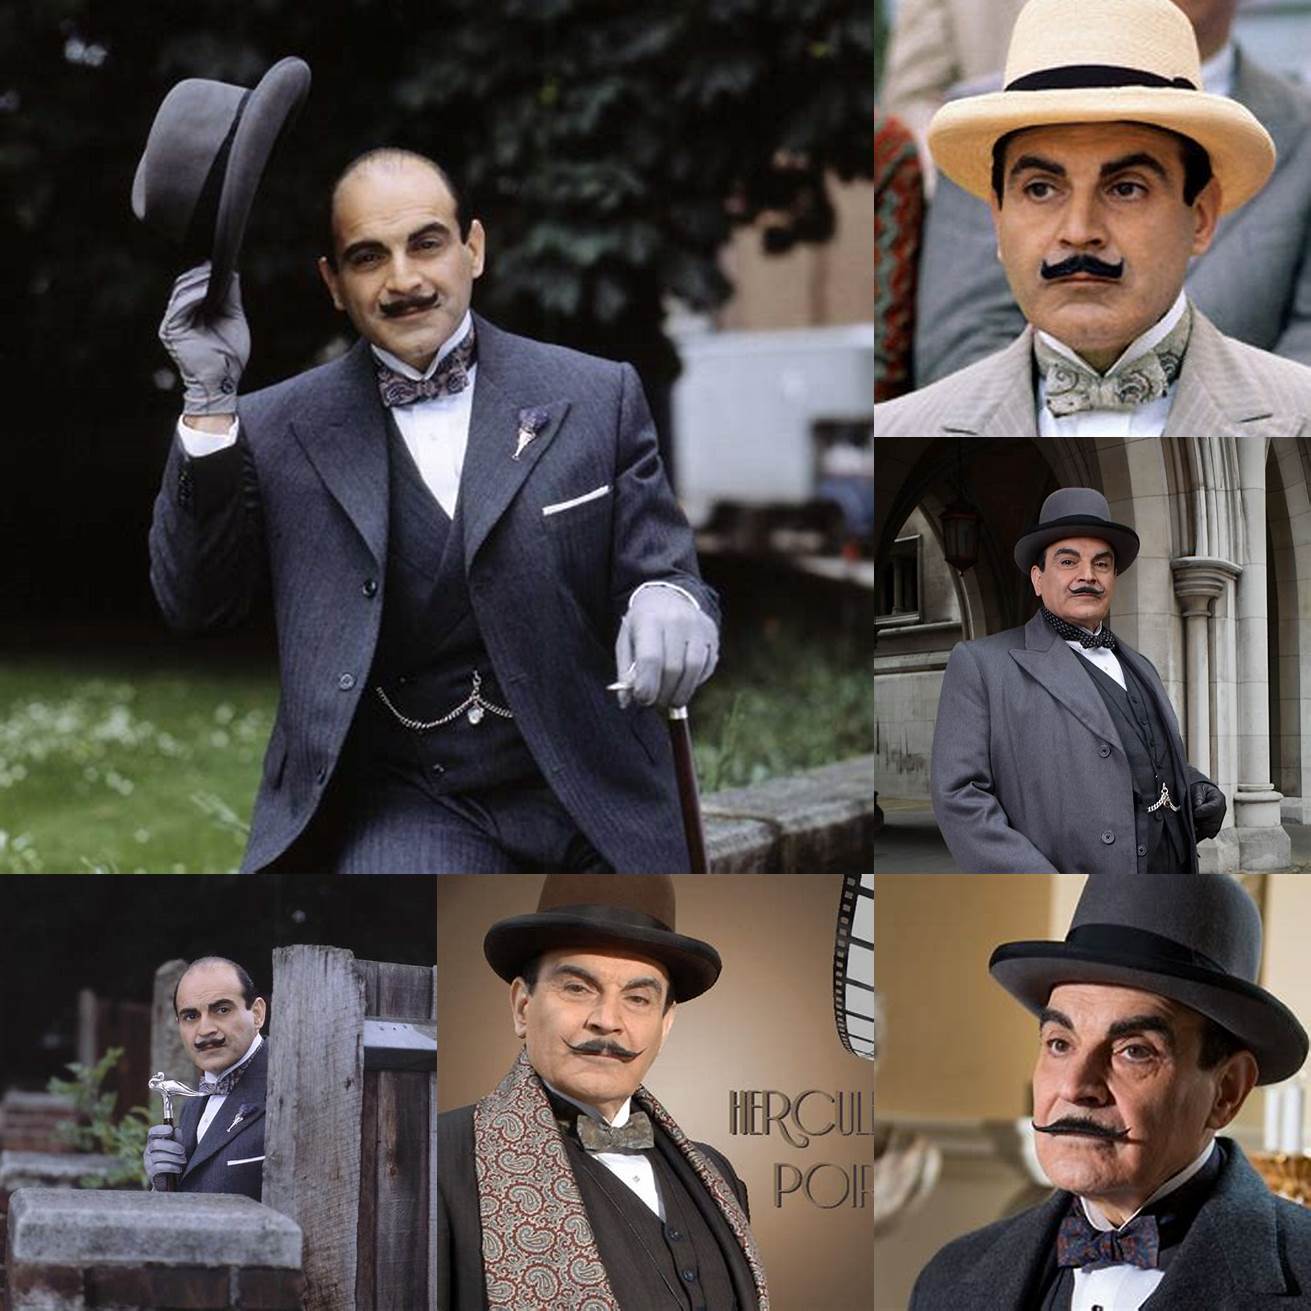 1 David Suchet - Played Hercule Poirot